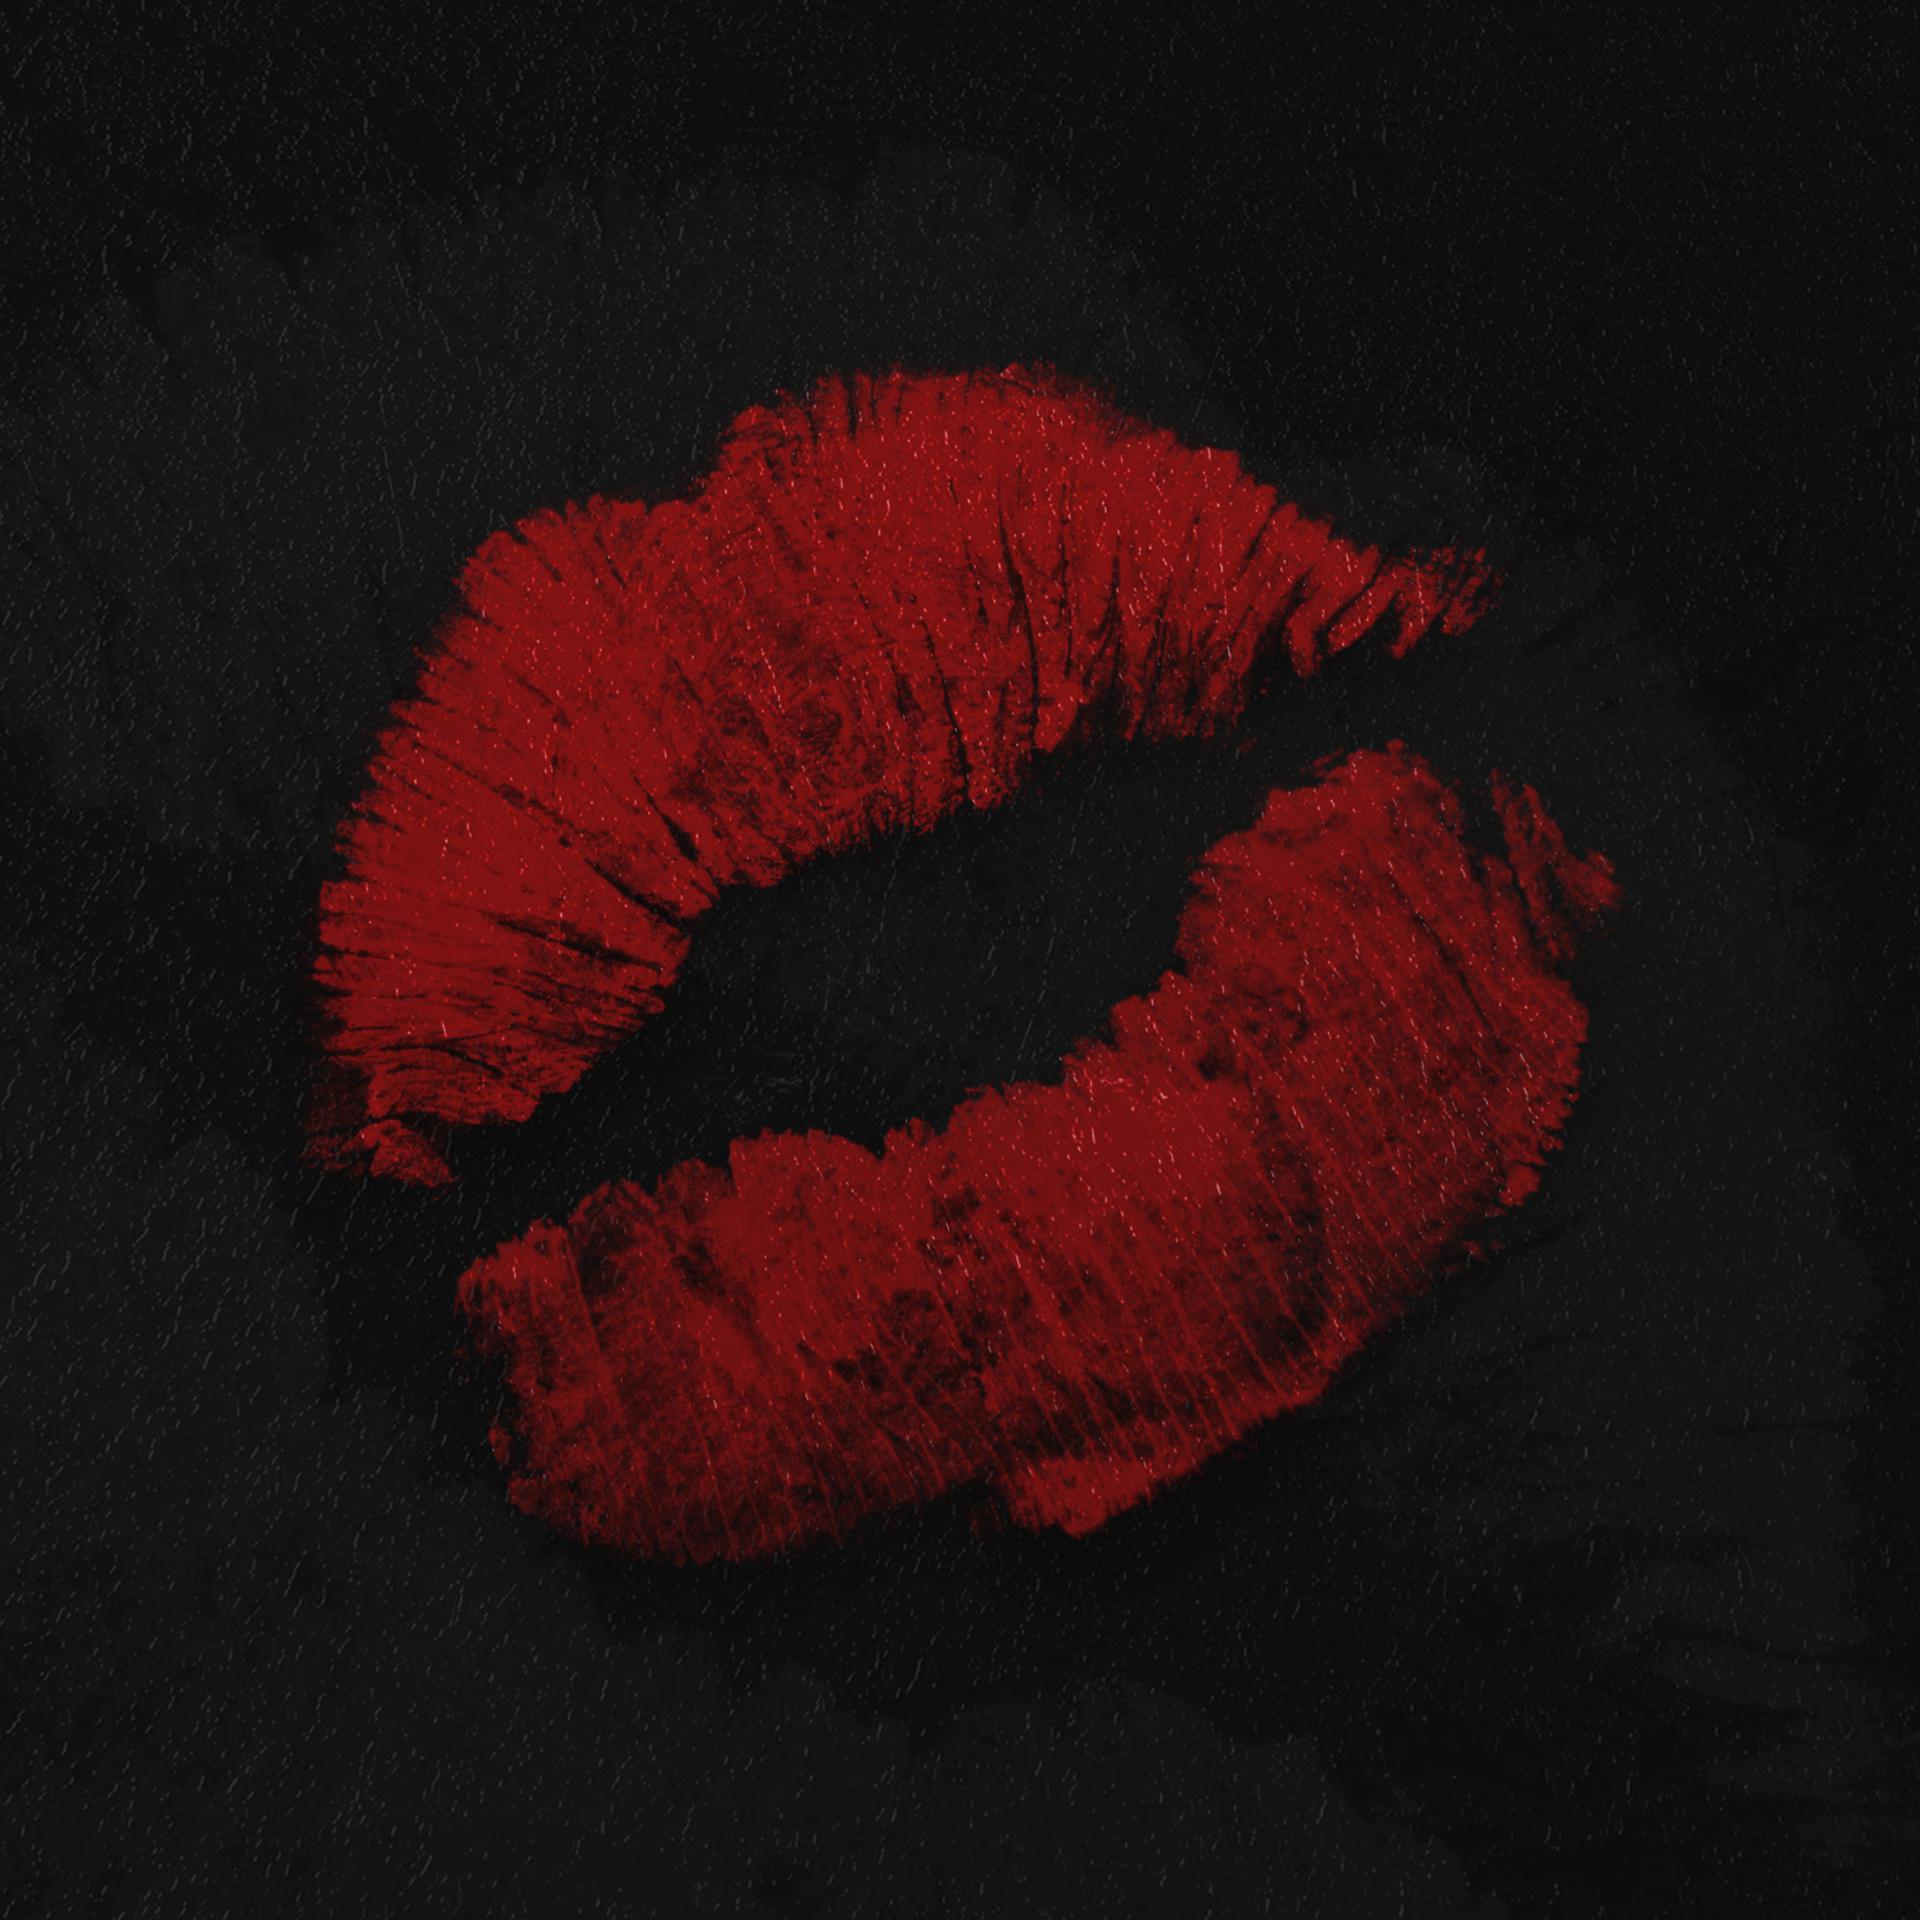 Постер альбома Поцелуи